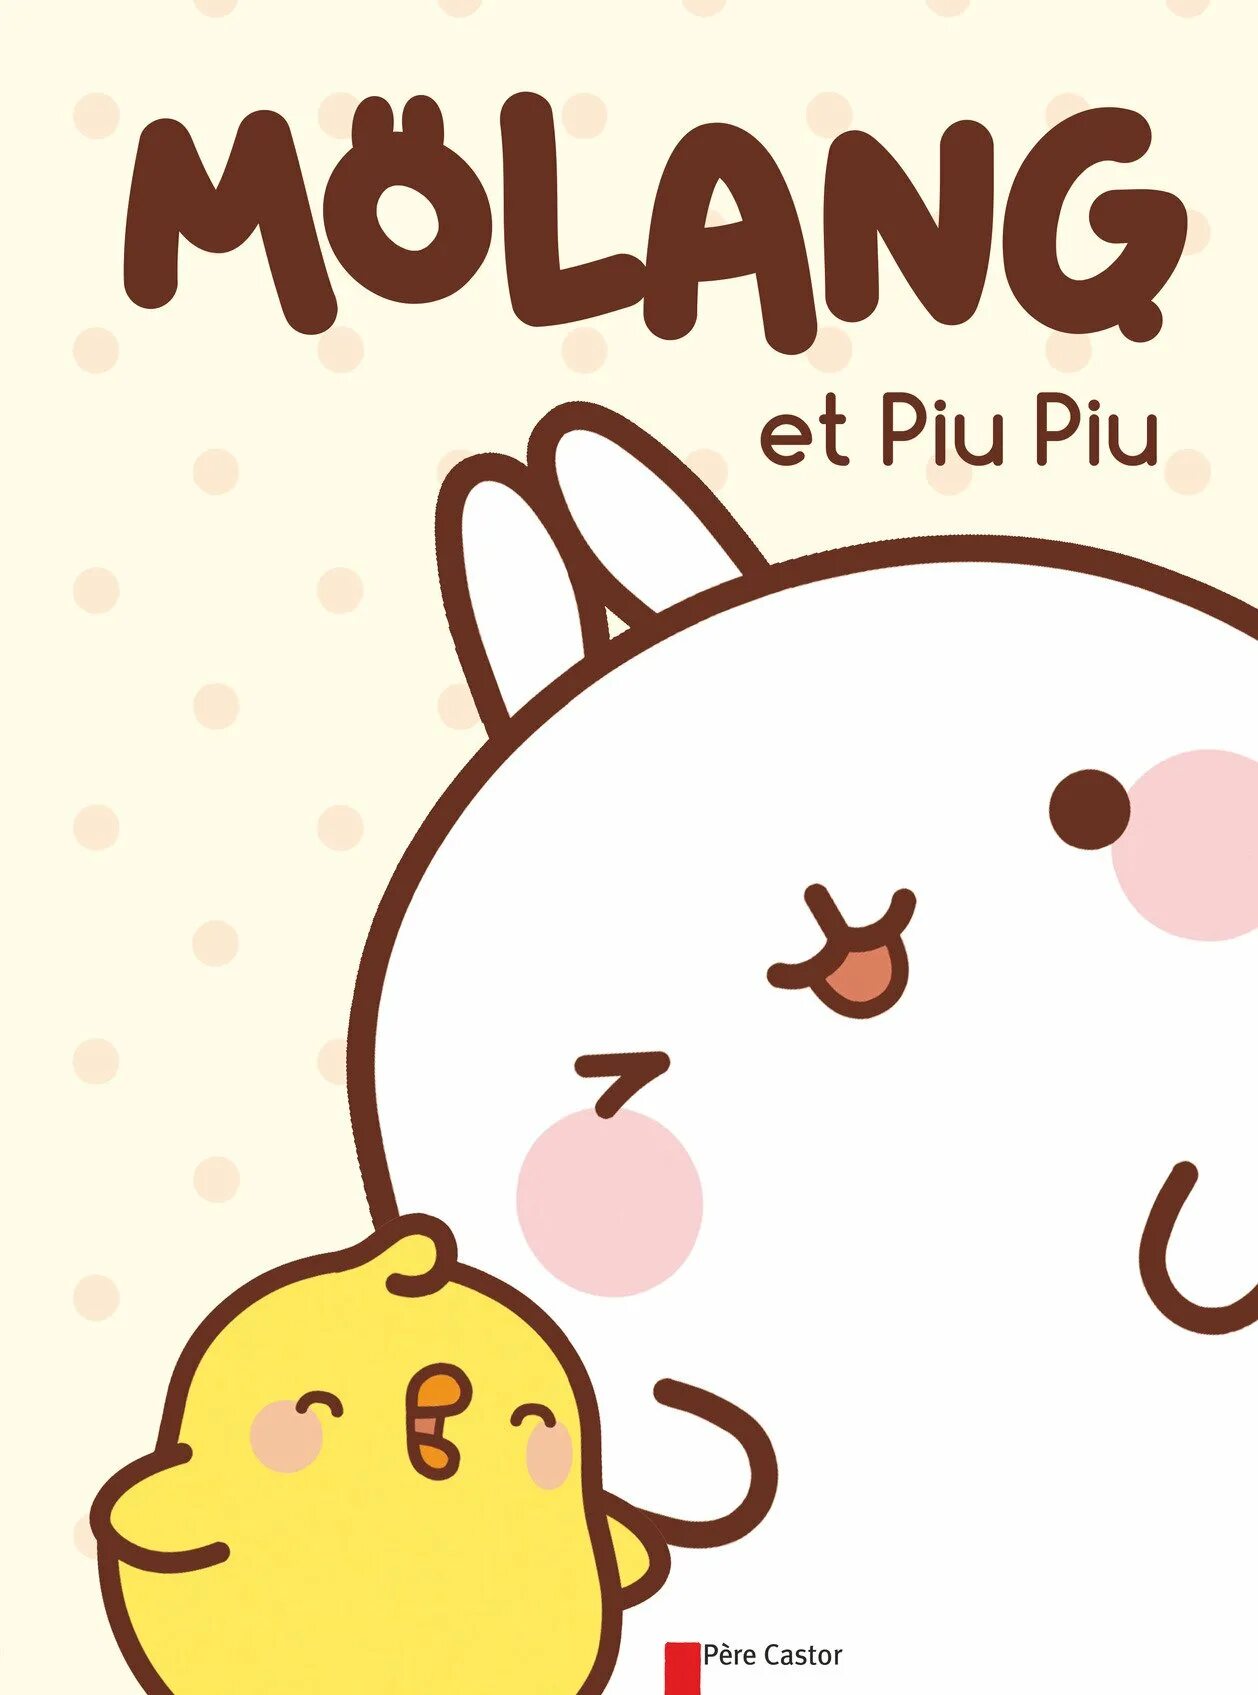 Моланг и пью пью. Кролик Molang. Моланг и пиу пиу. Molang and piu piu игрушки.